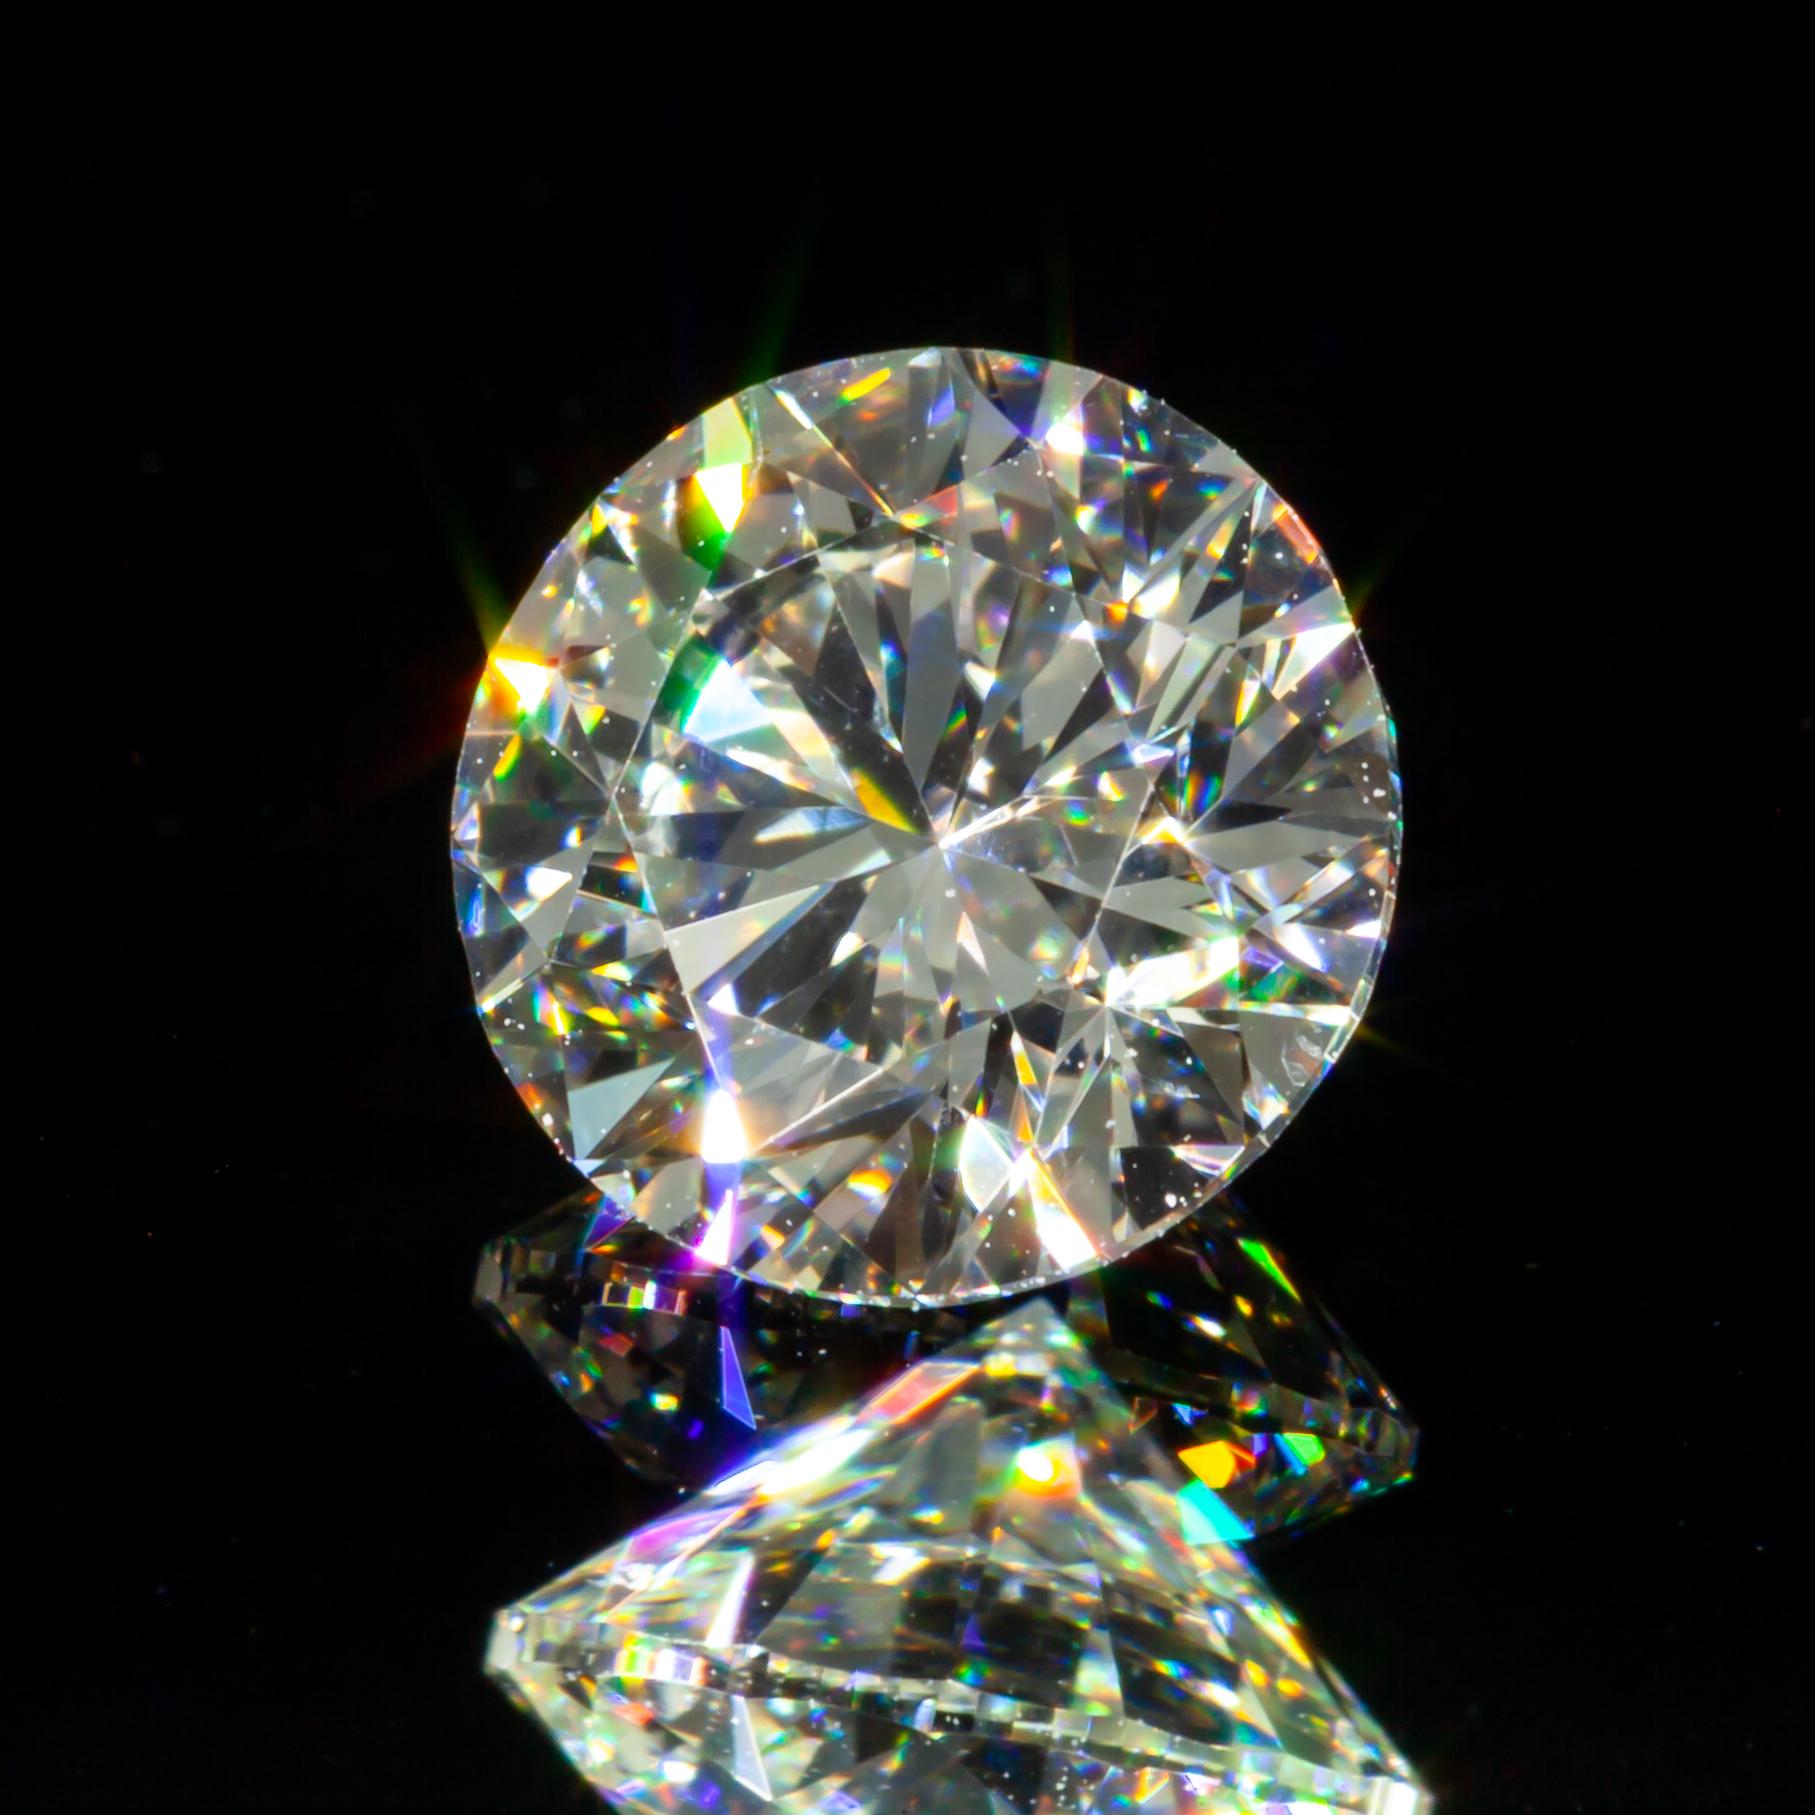 Informations générales sur le diamant
Taille du diamant : Brilliante ronde
Dimensions : 6.25  x  6.32  -  3.98 mm

Résultats de la classification des diamants
Poids en carats : 1,00
Classe de couleur : K
Grade de clarté : VS2

Informations